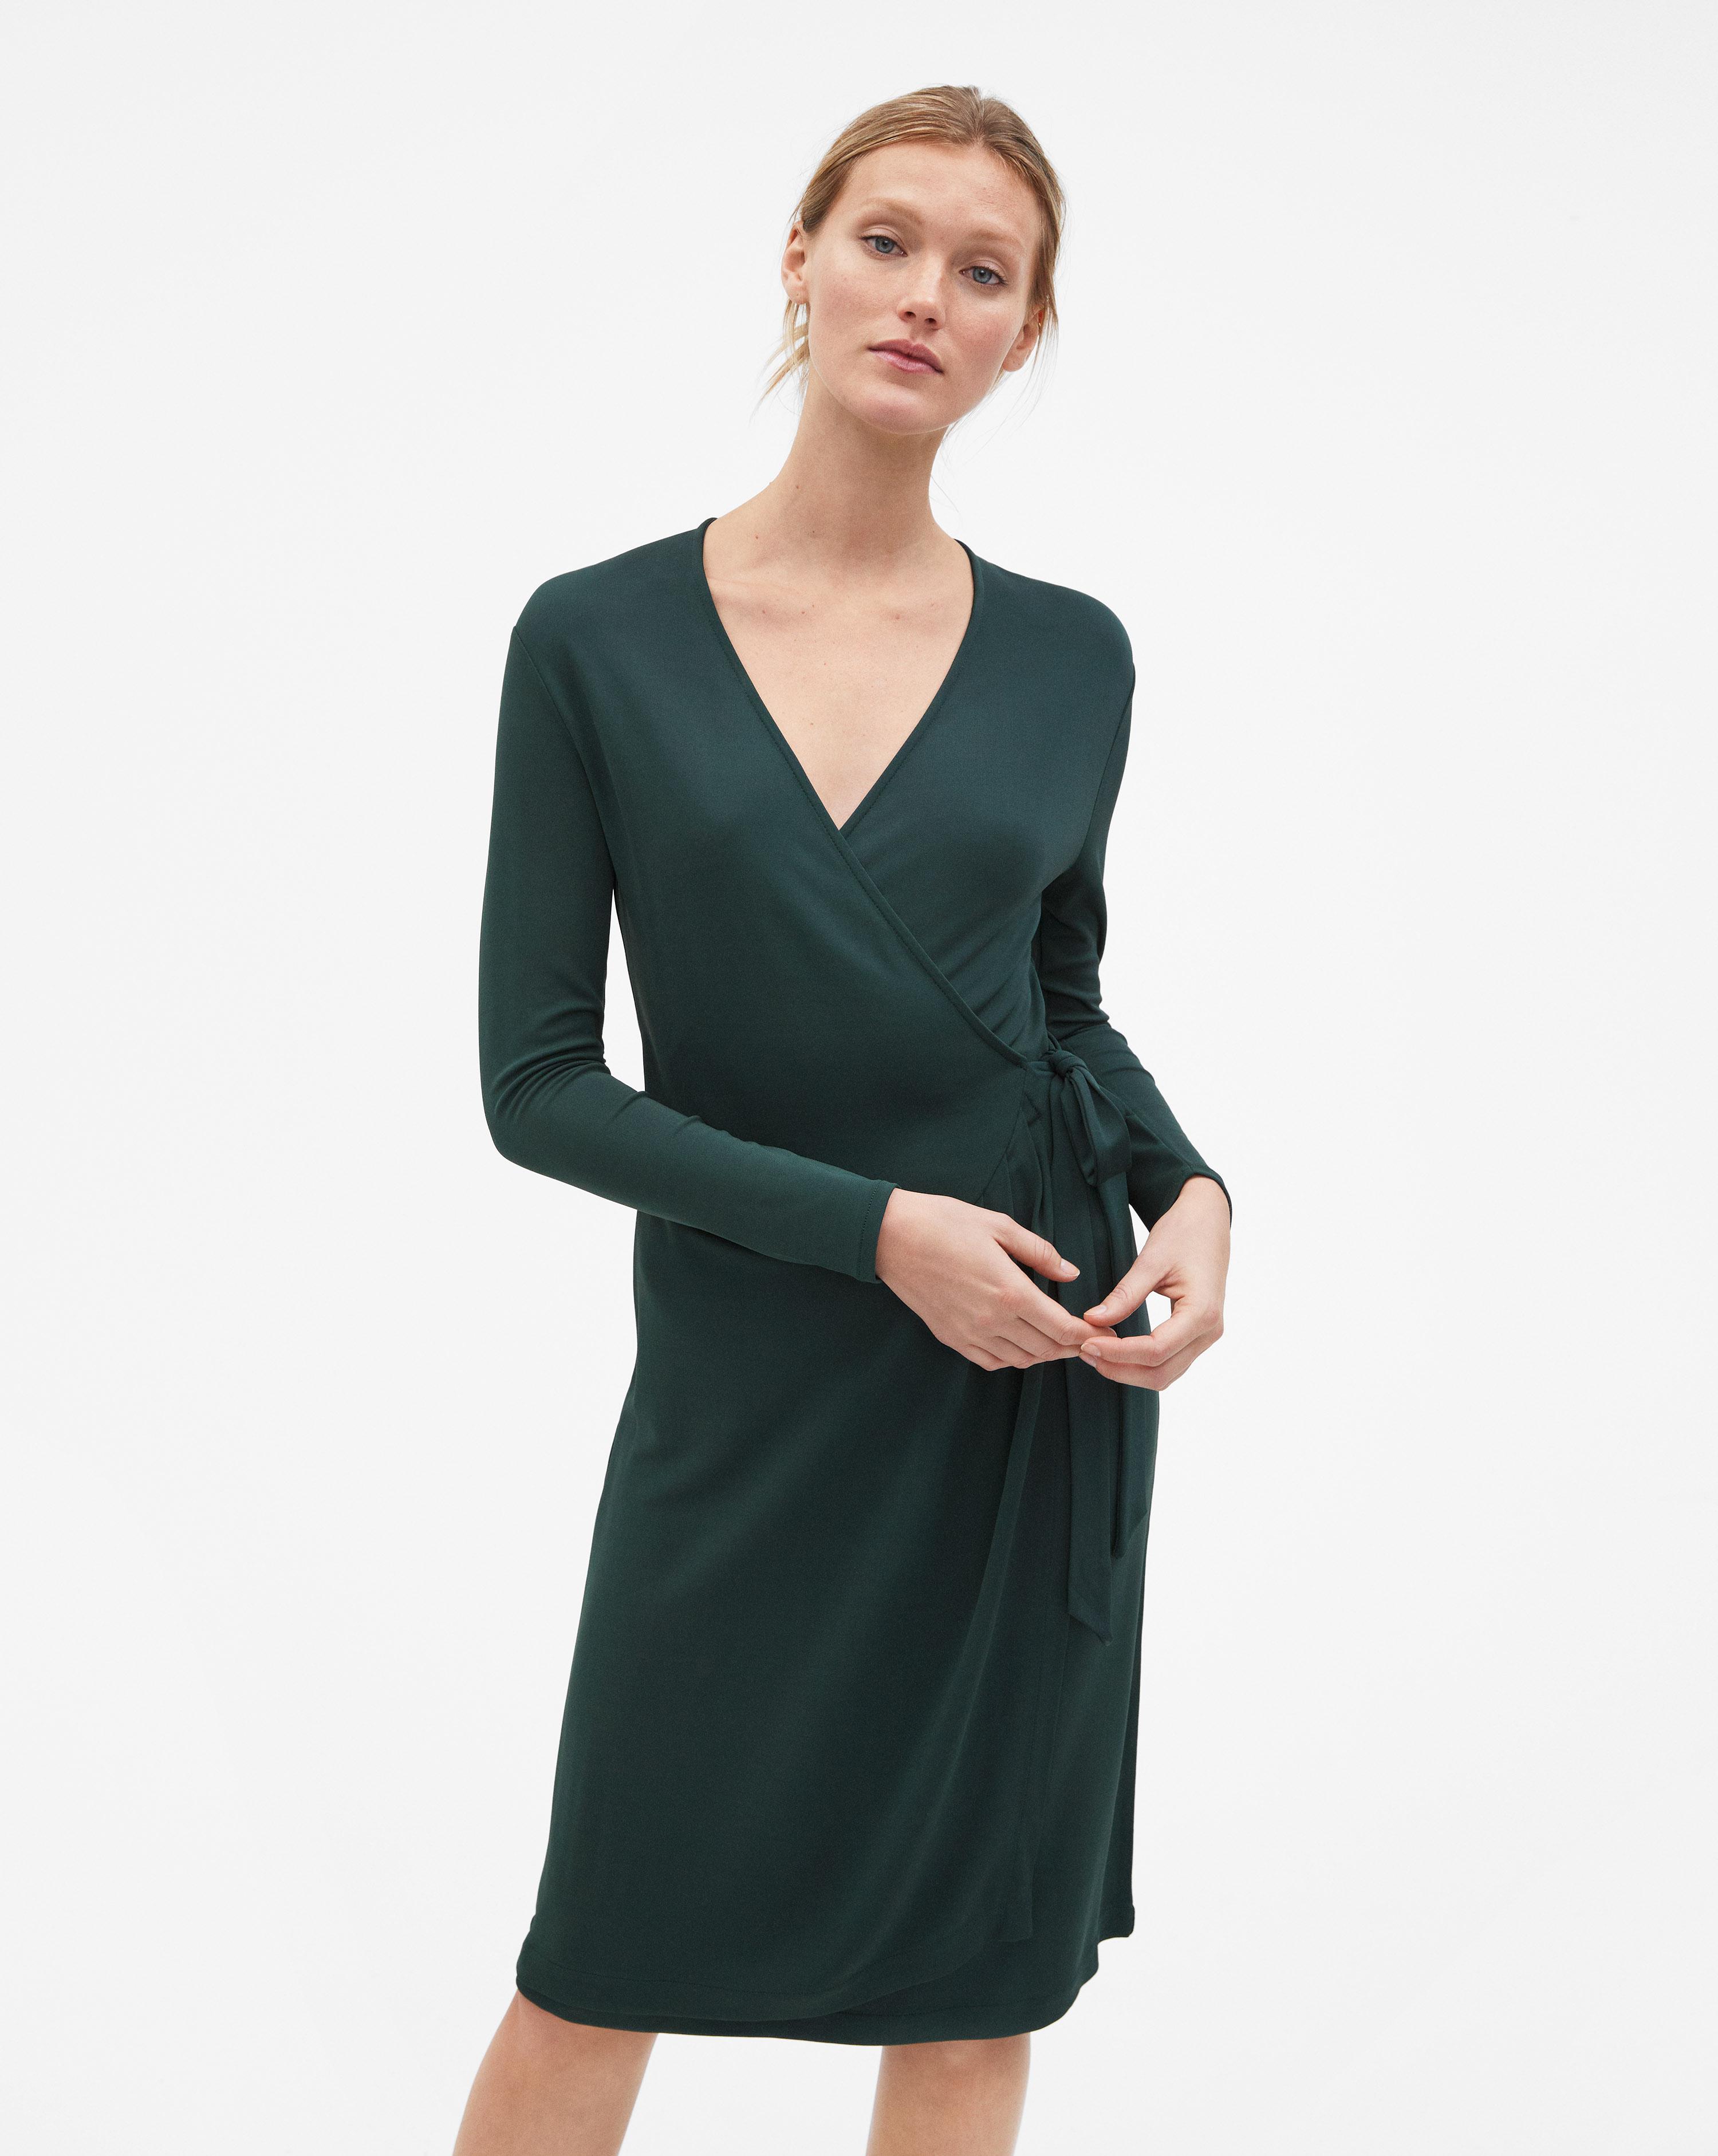 Filippa K Synthetic Drapey Crepe Wrap Dress Spruce in Green - Lyst